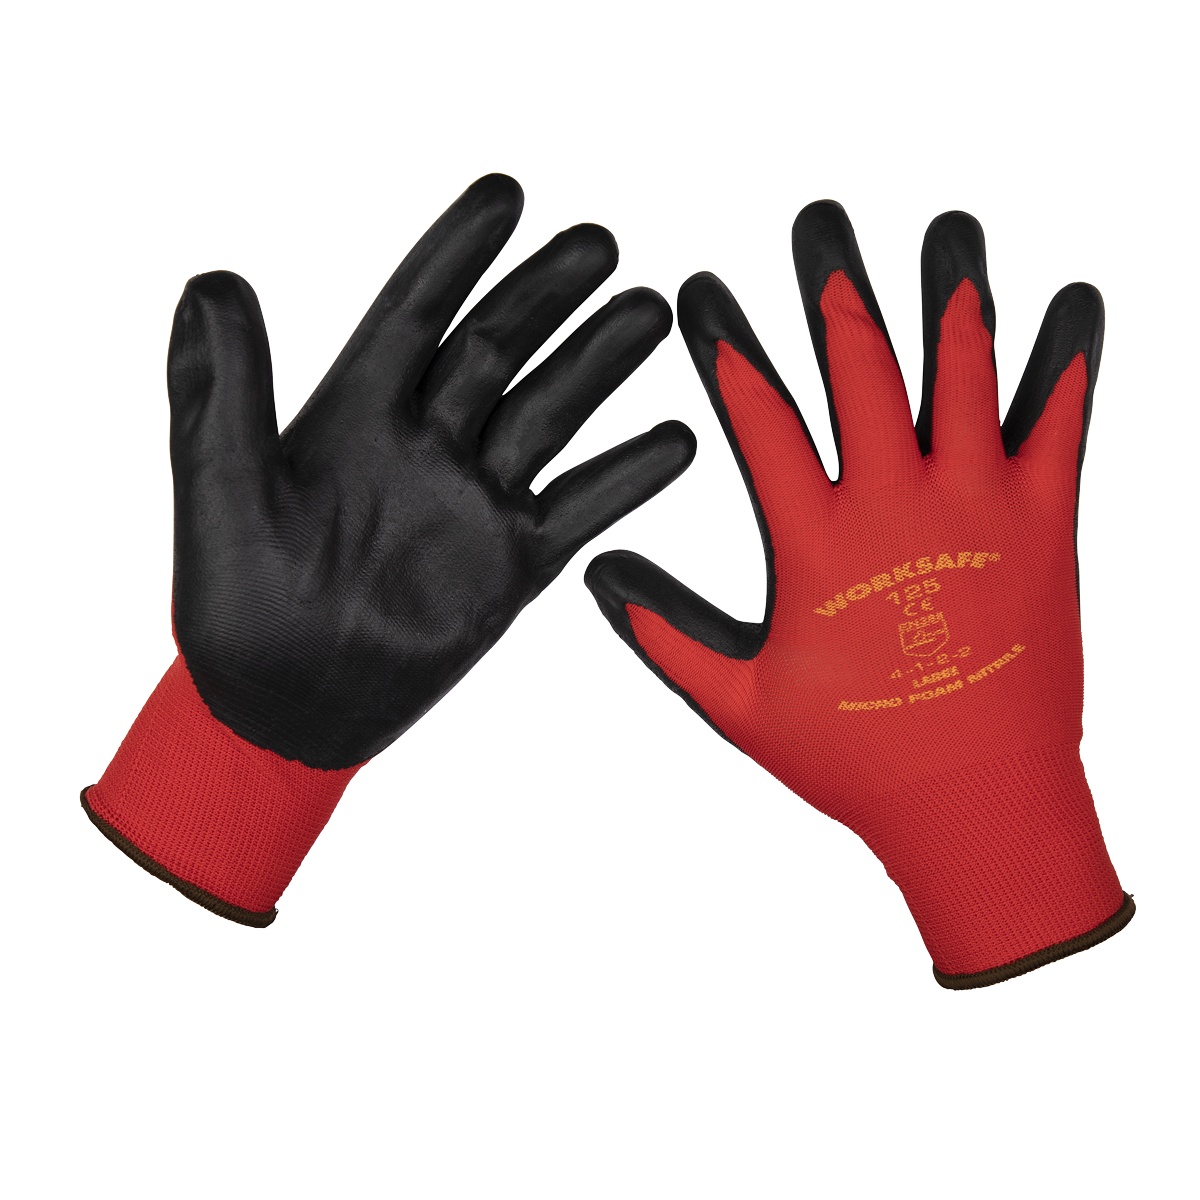 Flexi Grip Nitrile Palm Gloves (Large) - Pair - 9125L - Farming Parts